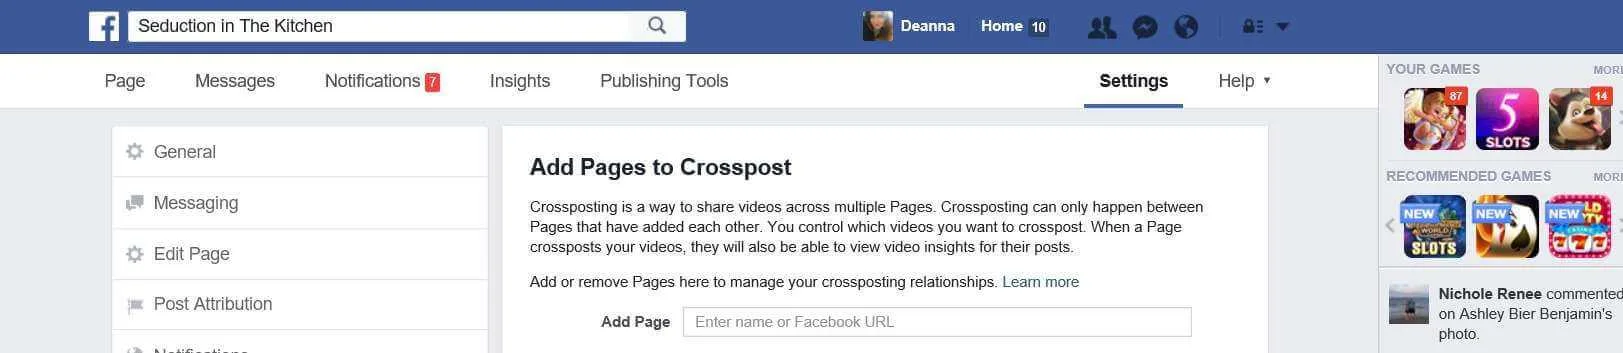 Facebook CrossPosting Videos